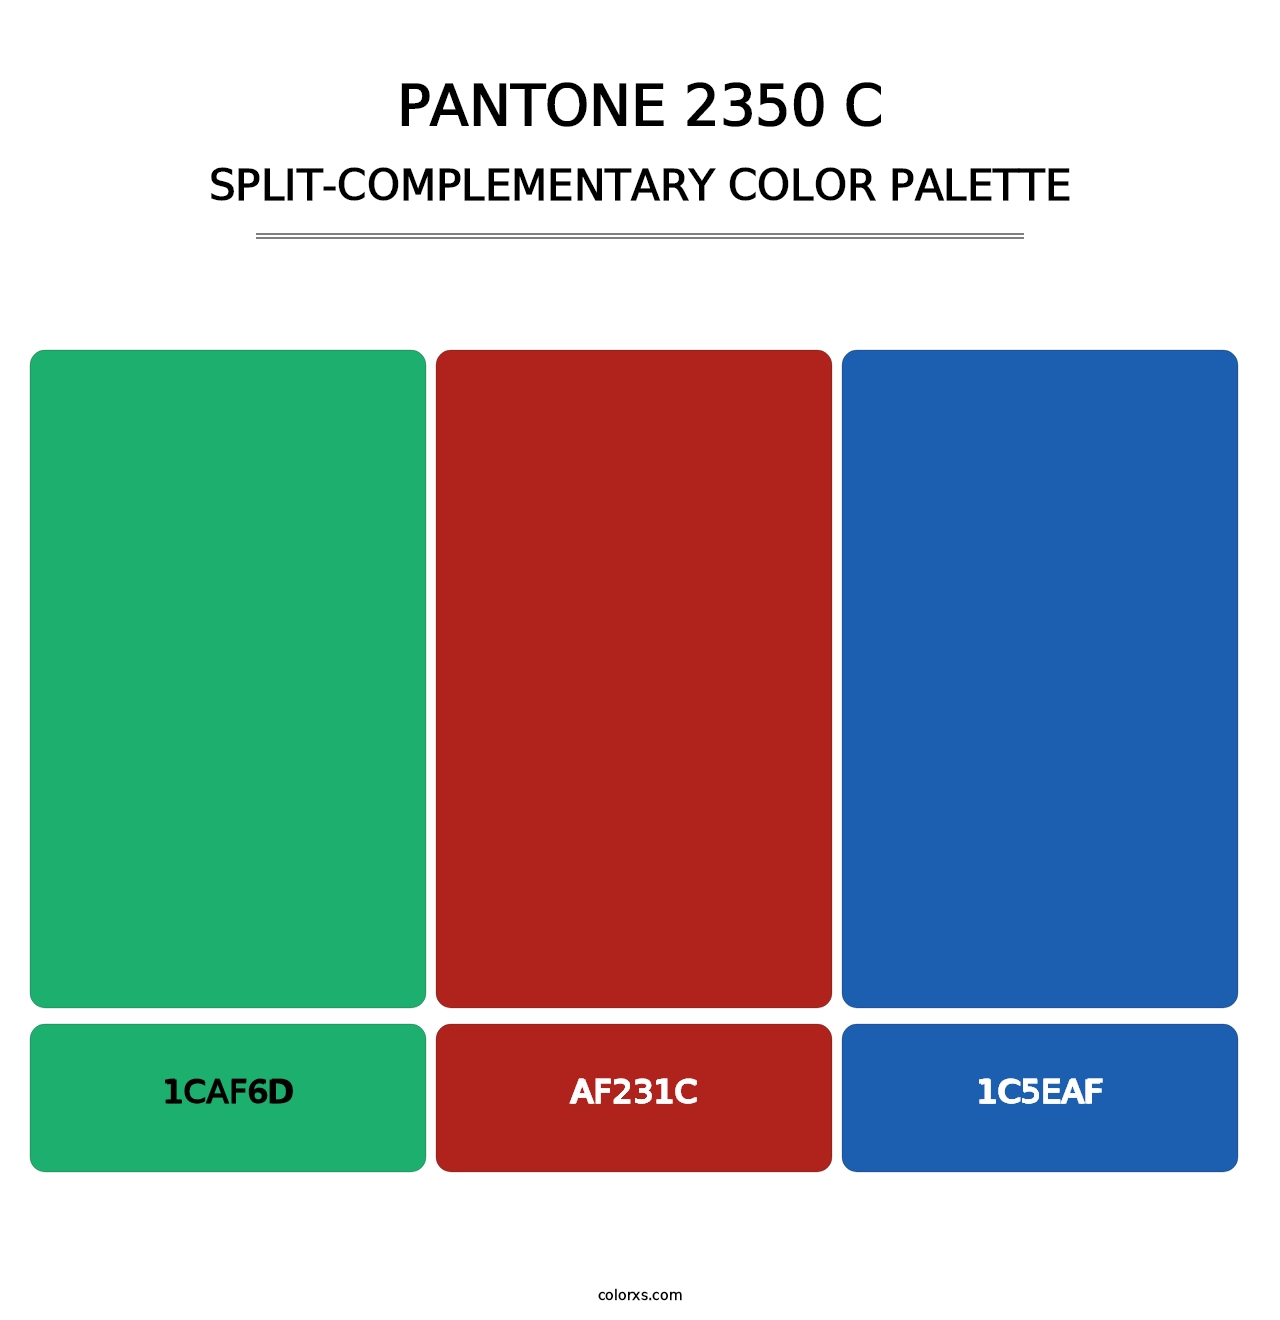 PANTONE 2350 C - Split-Complementary Color Palette